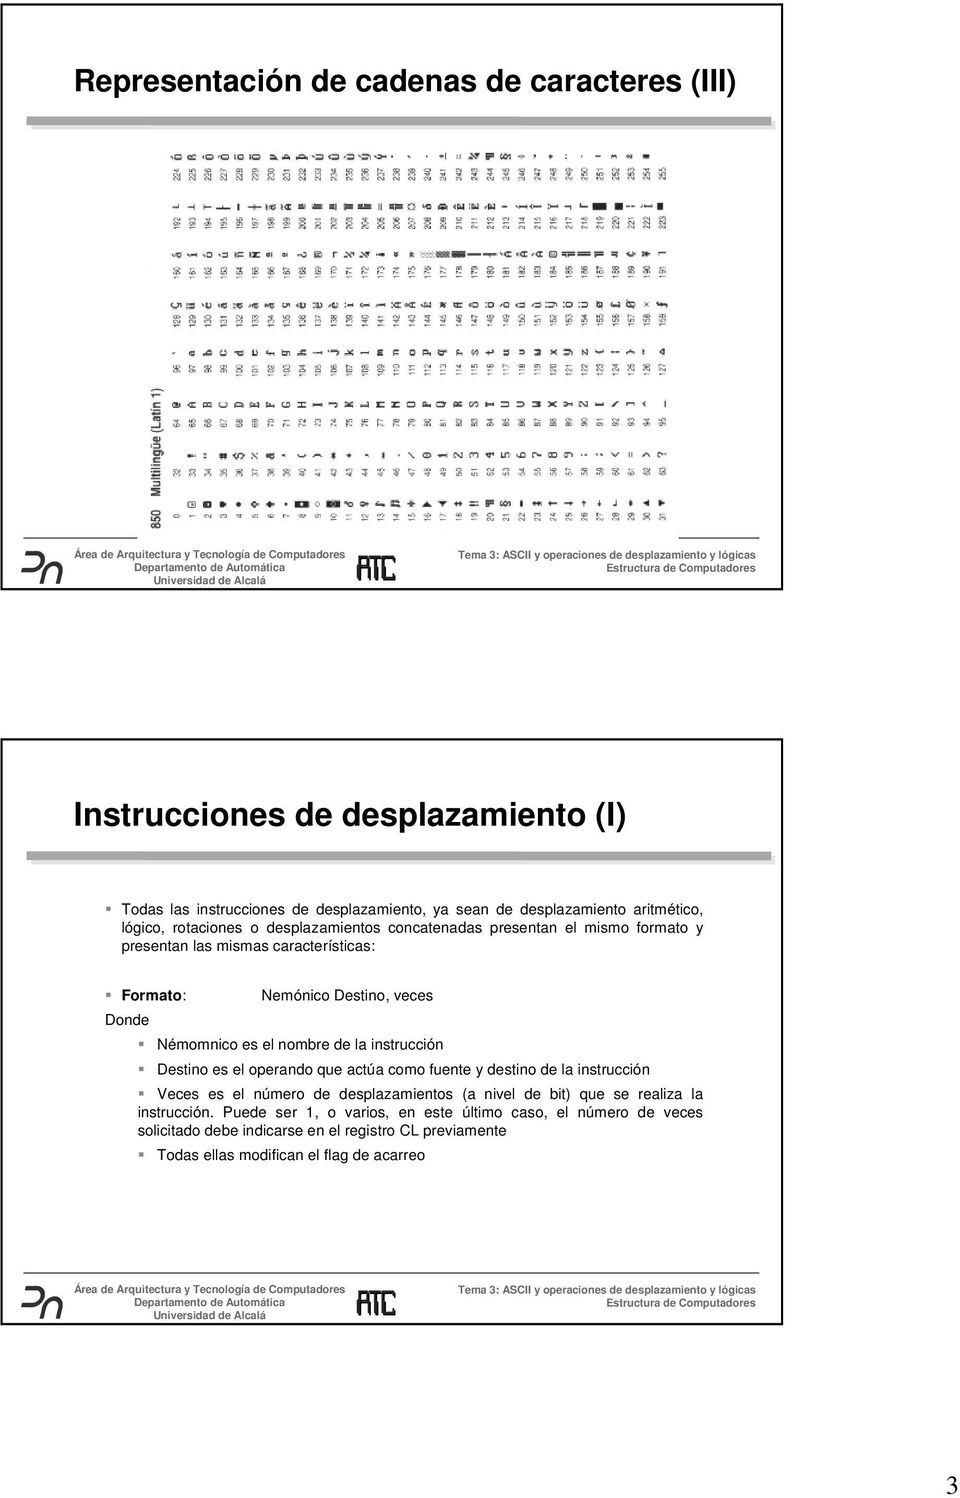 Némomnicoeselnombredelainstrucción S Destino es el operando que actúa como fuente y destino de la instrucción S Veces es el número de desplazamientos (a nivel de bit)